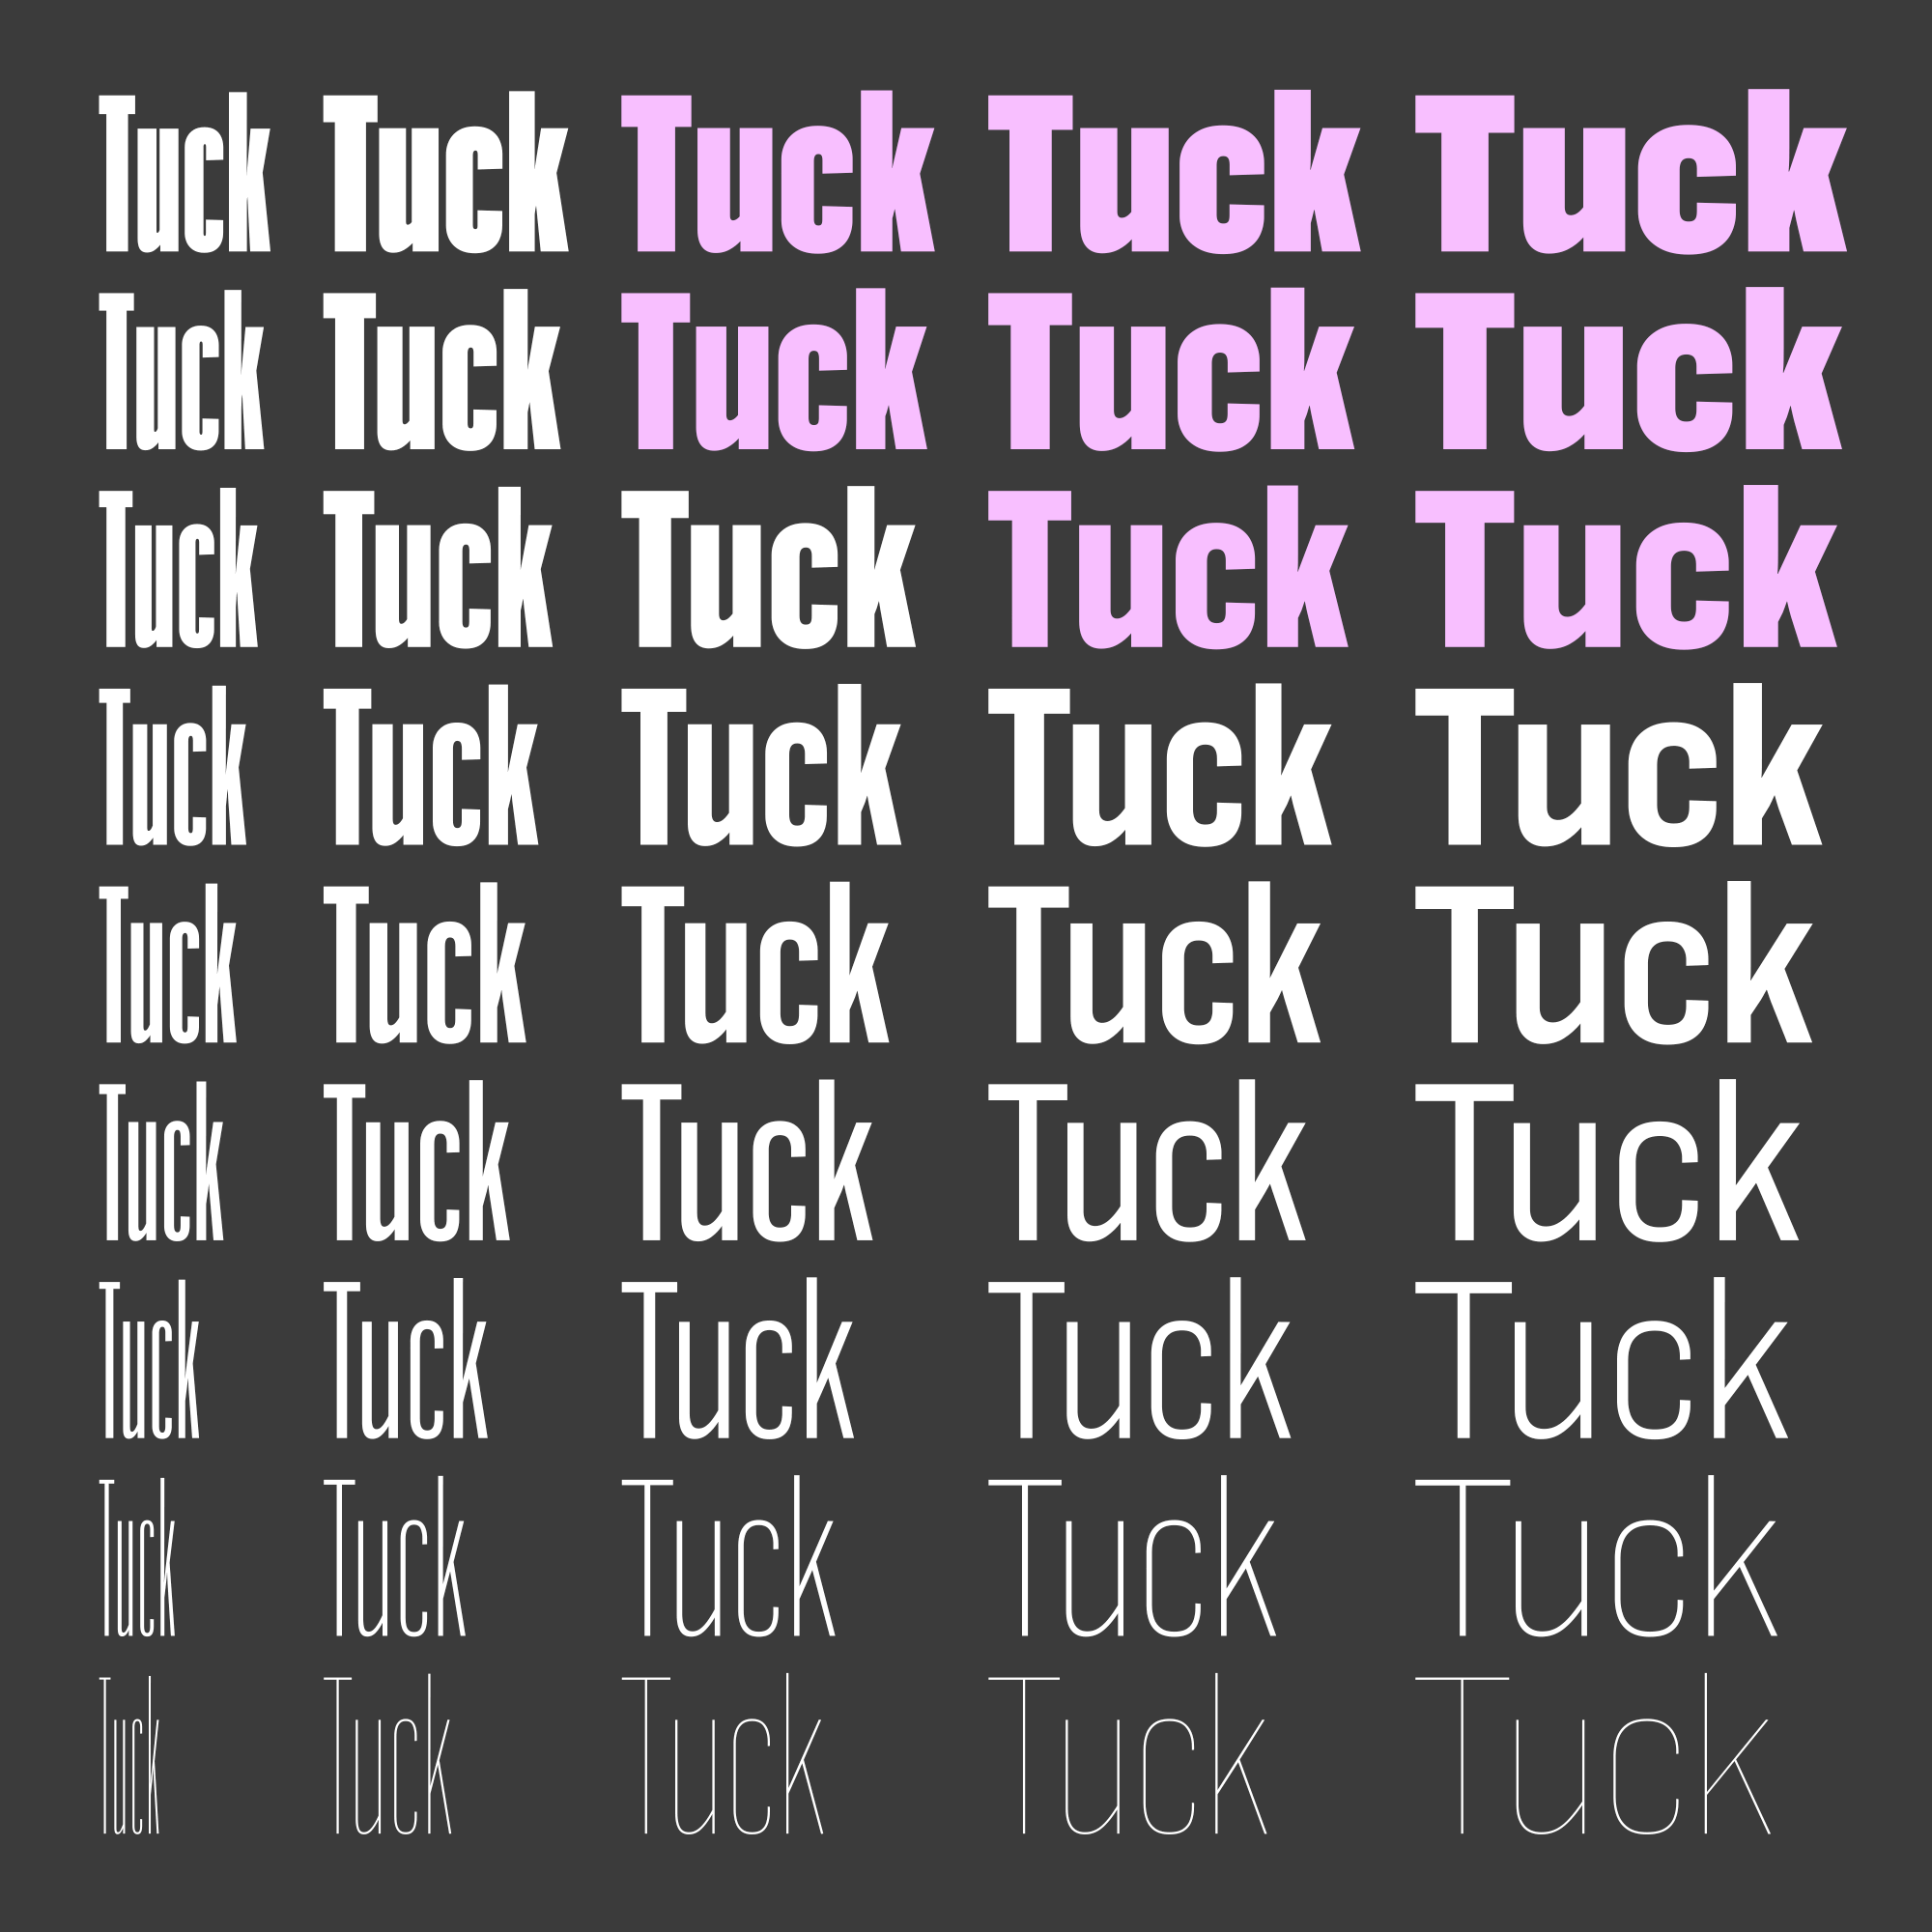 Kerning of the word 'Tuck' across the Bild family.